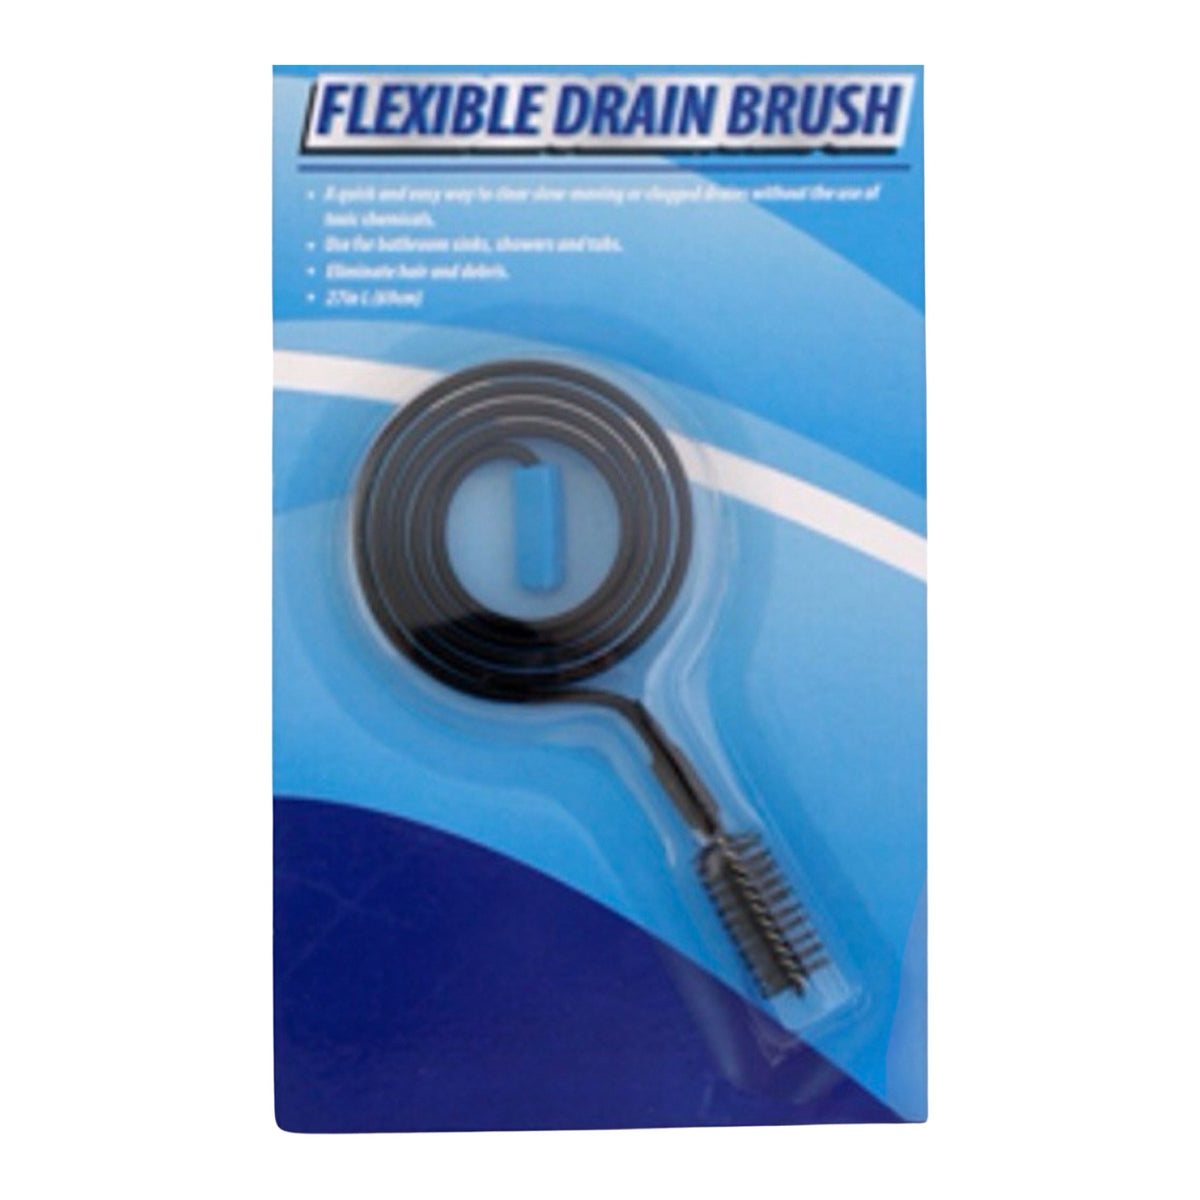 27" Flexible Drain Brush, An Easy Way To Clean Drains - Eliminate Hair & Debris